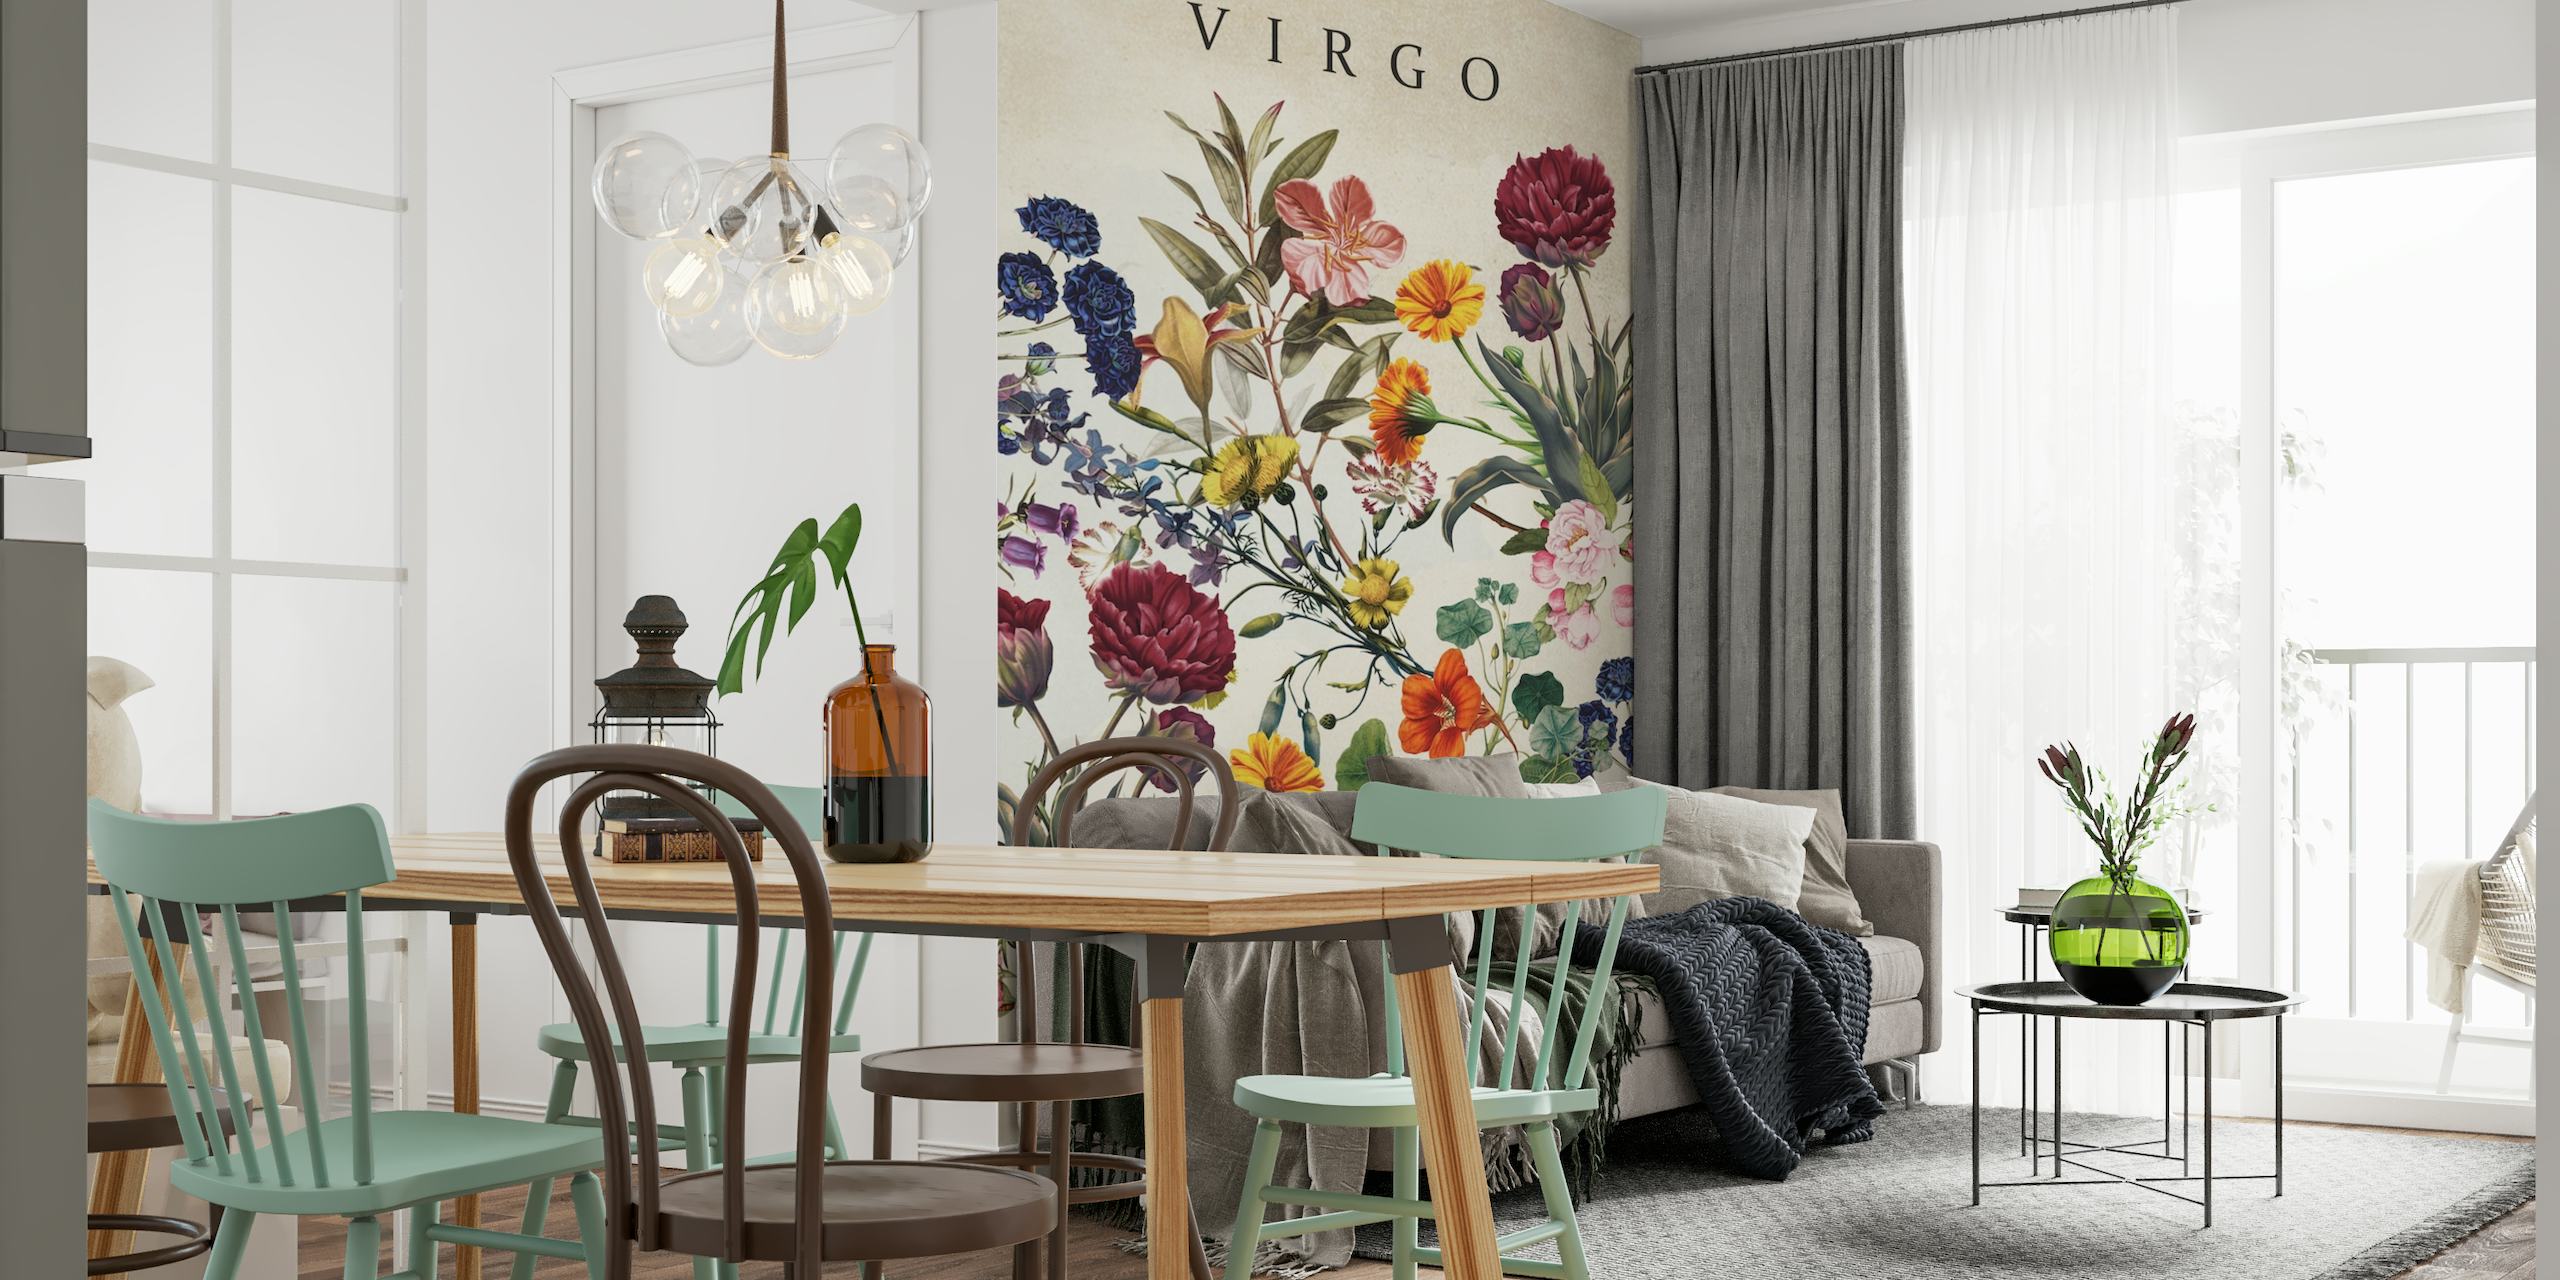 Virgo wallpaper